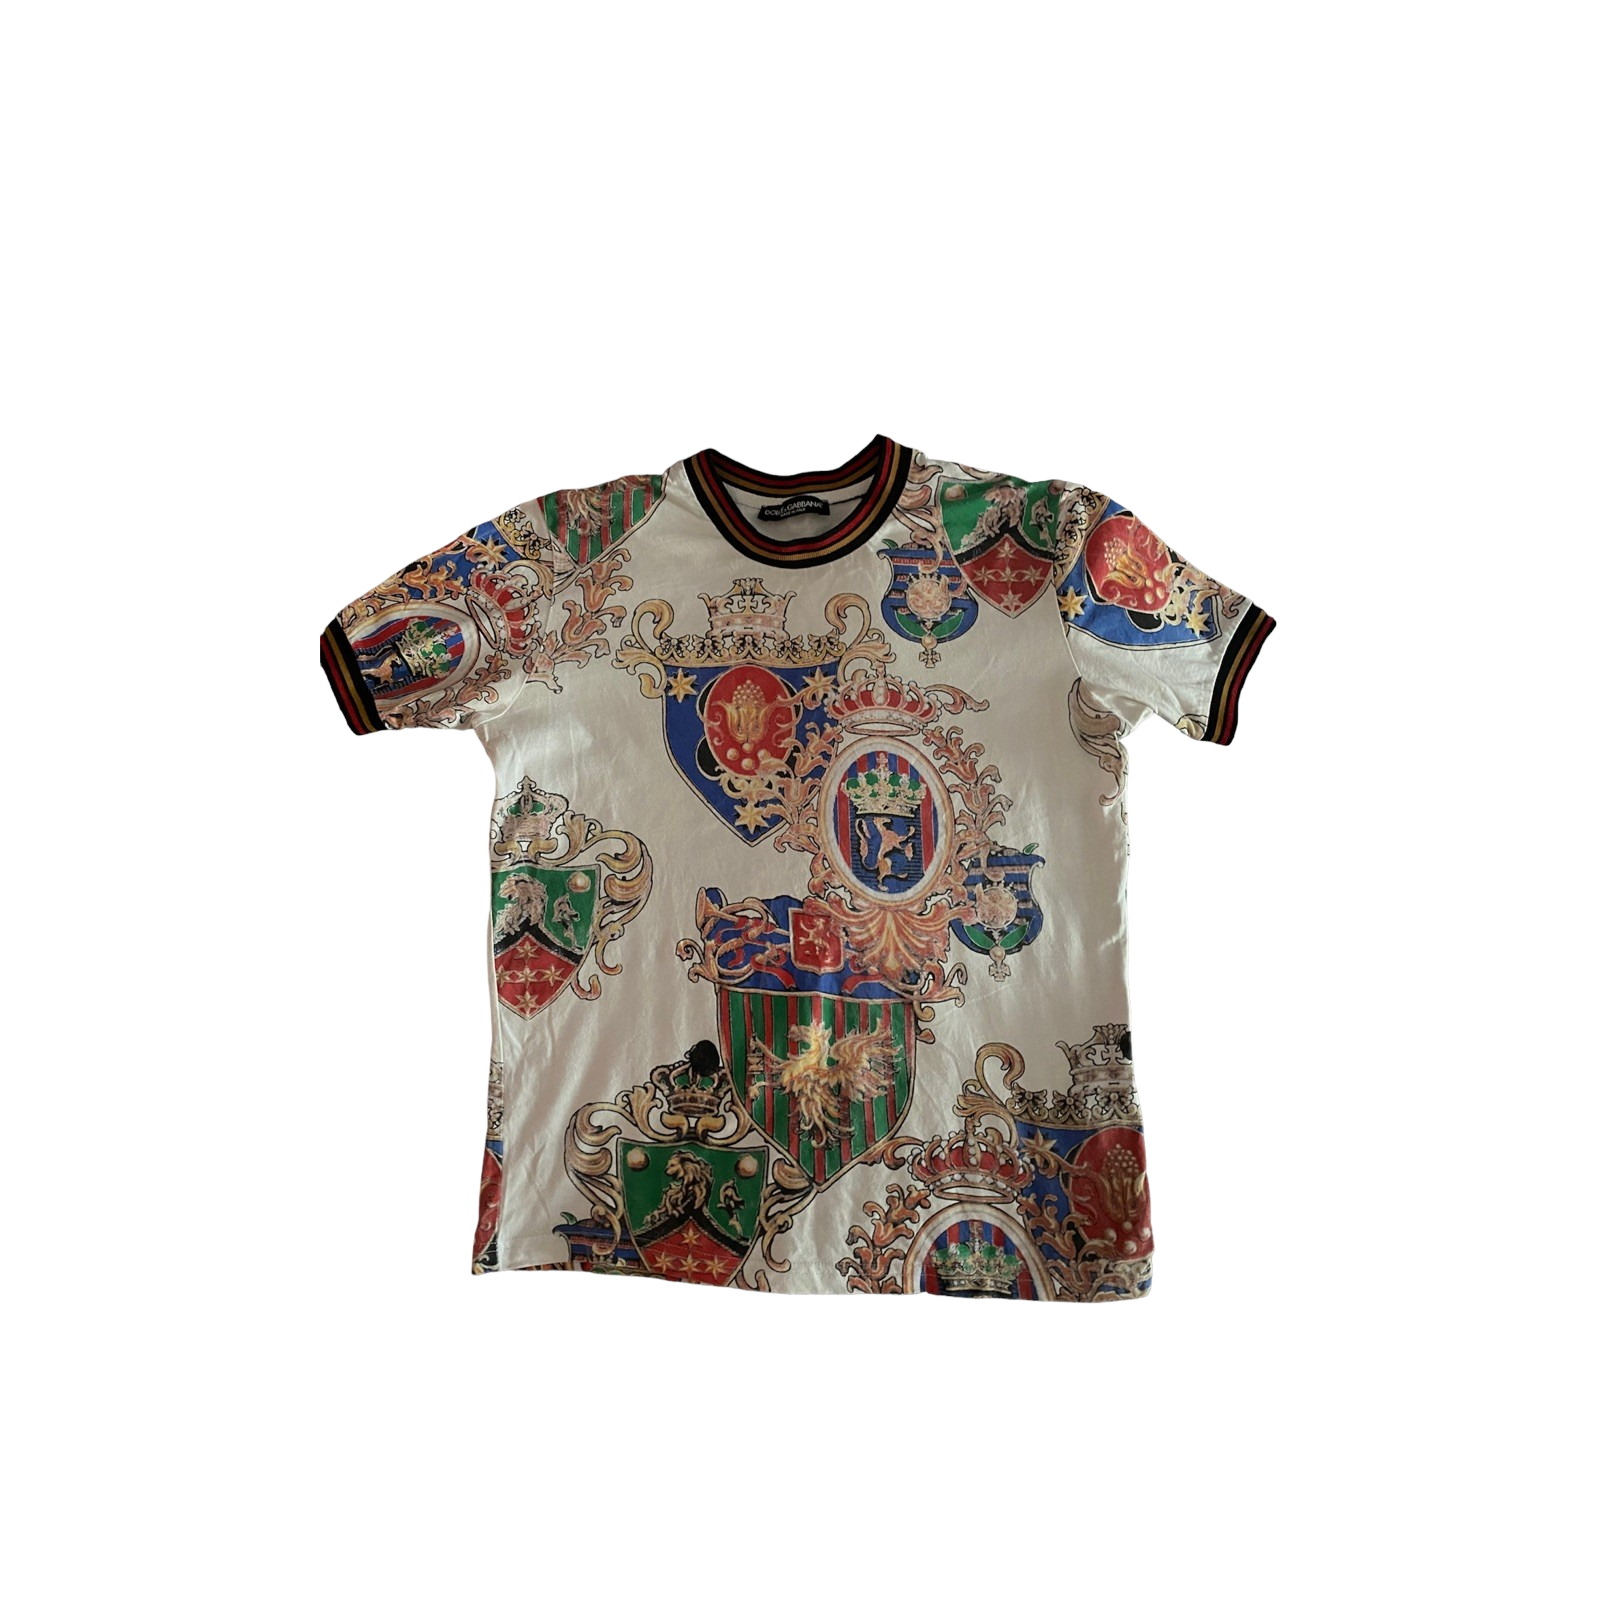 Tshirt Dolce & Gabbana Star King Collection